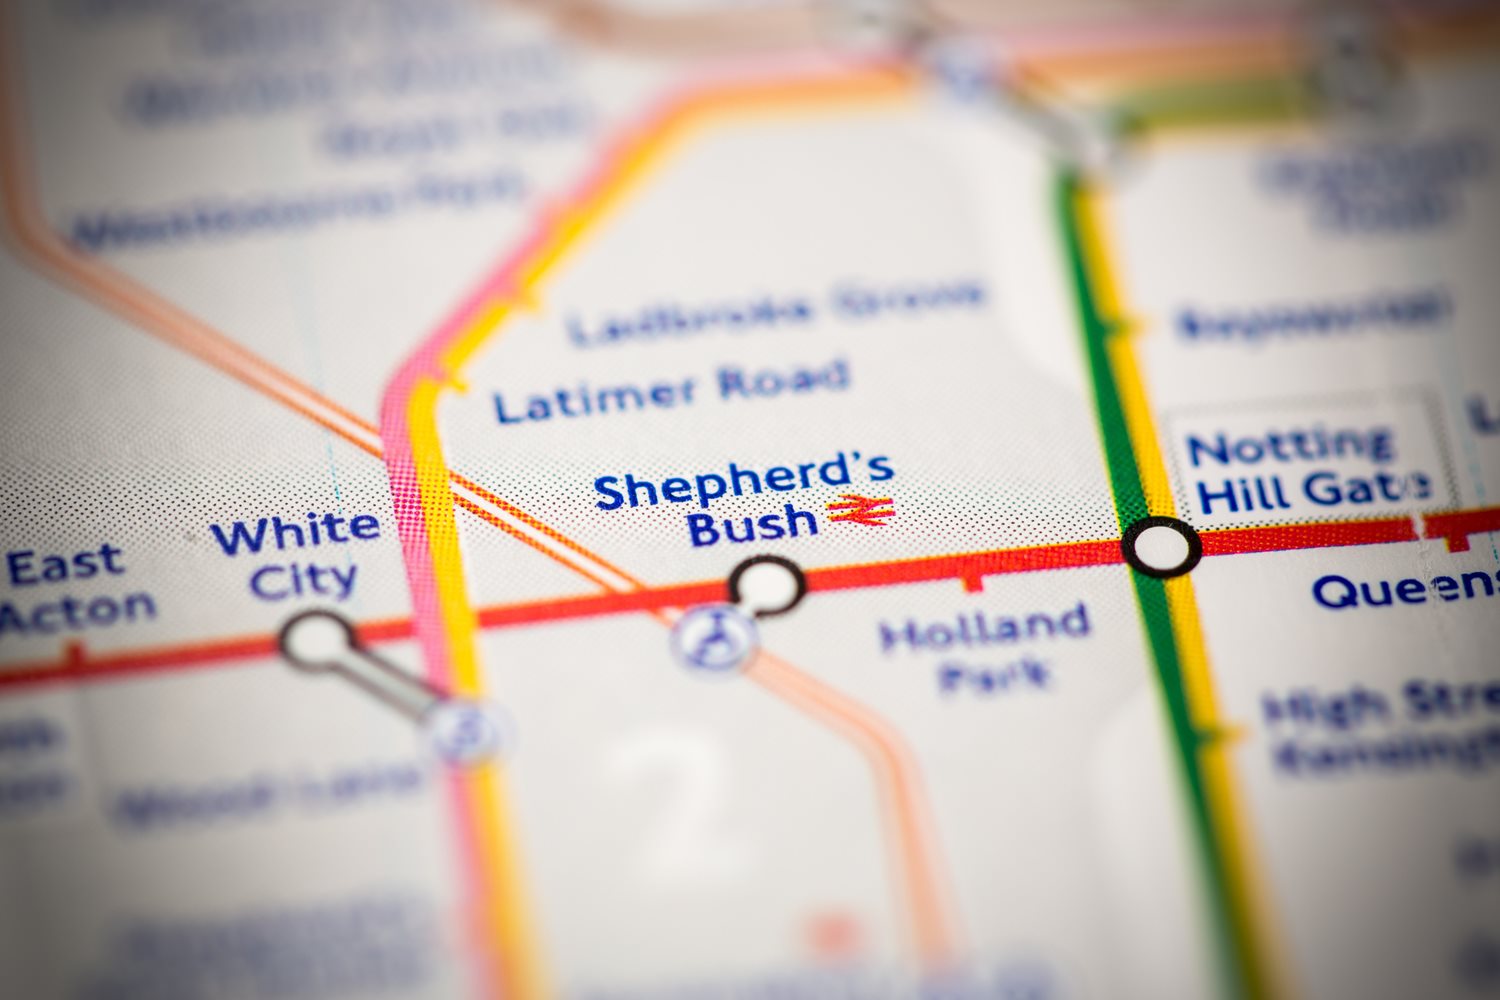 Close up of Shepherds Bush tube station on a tube map.